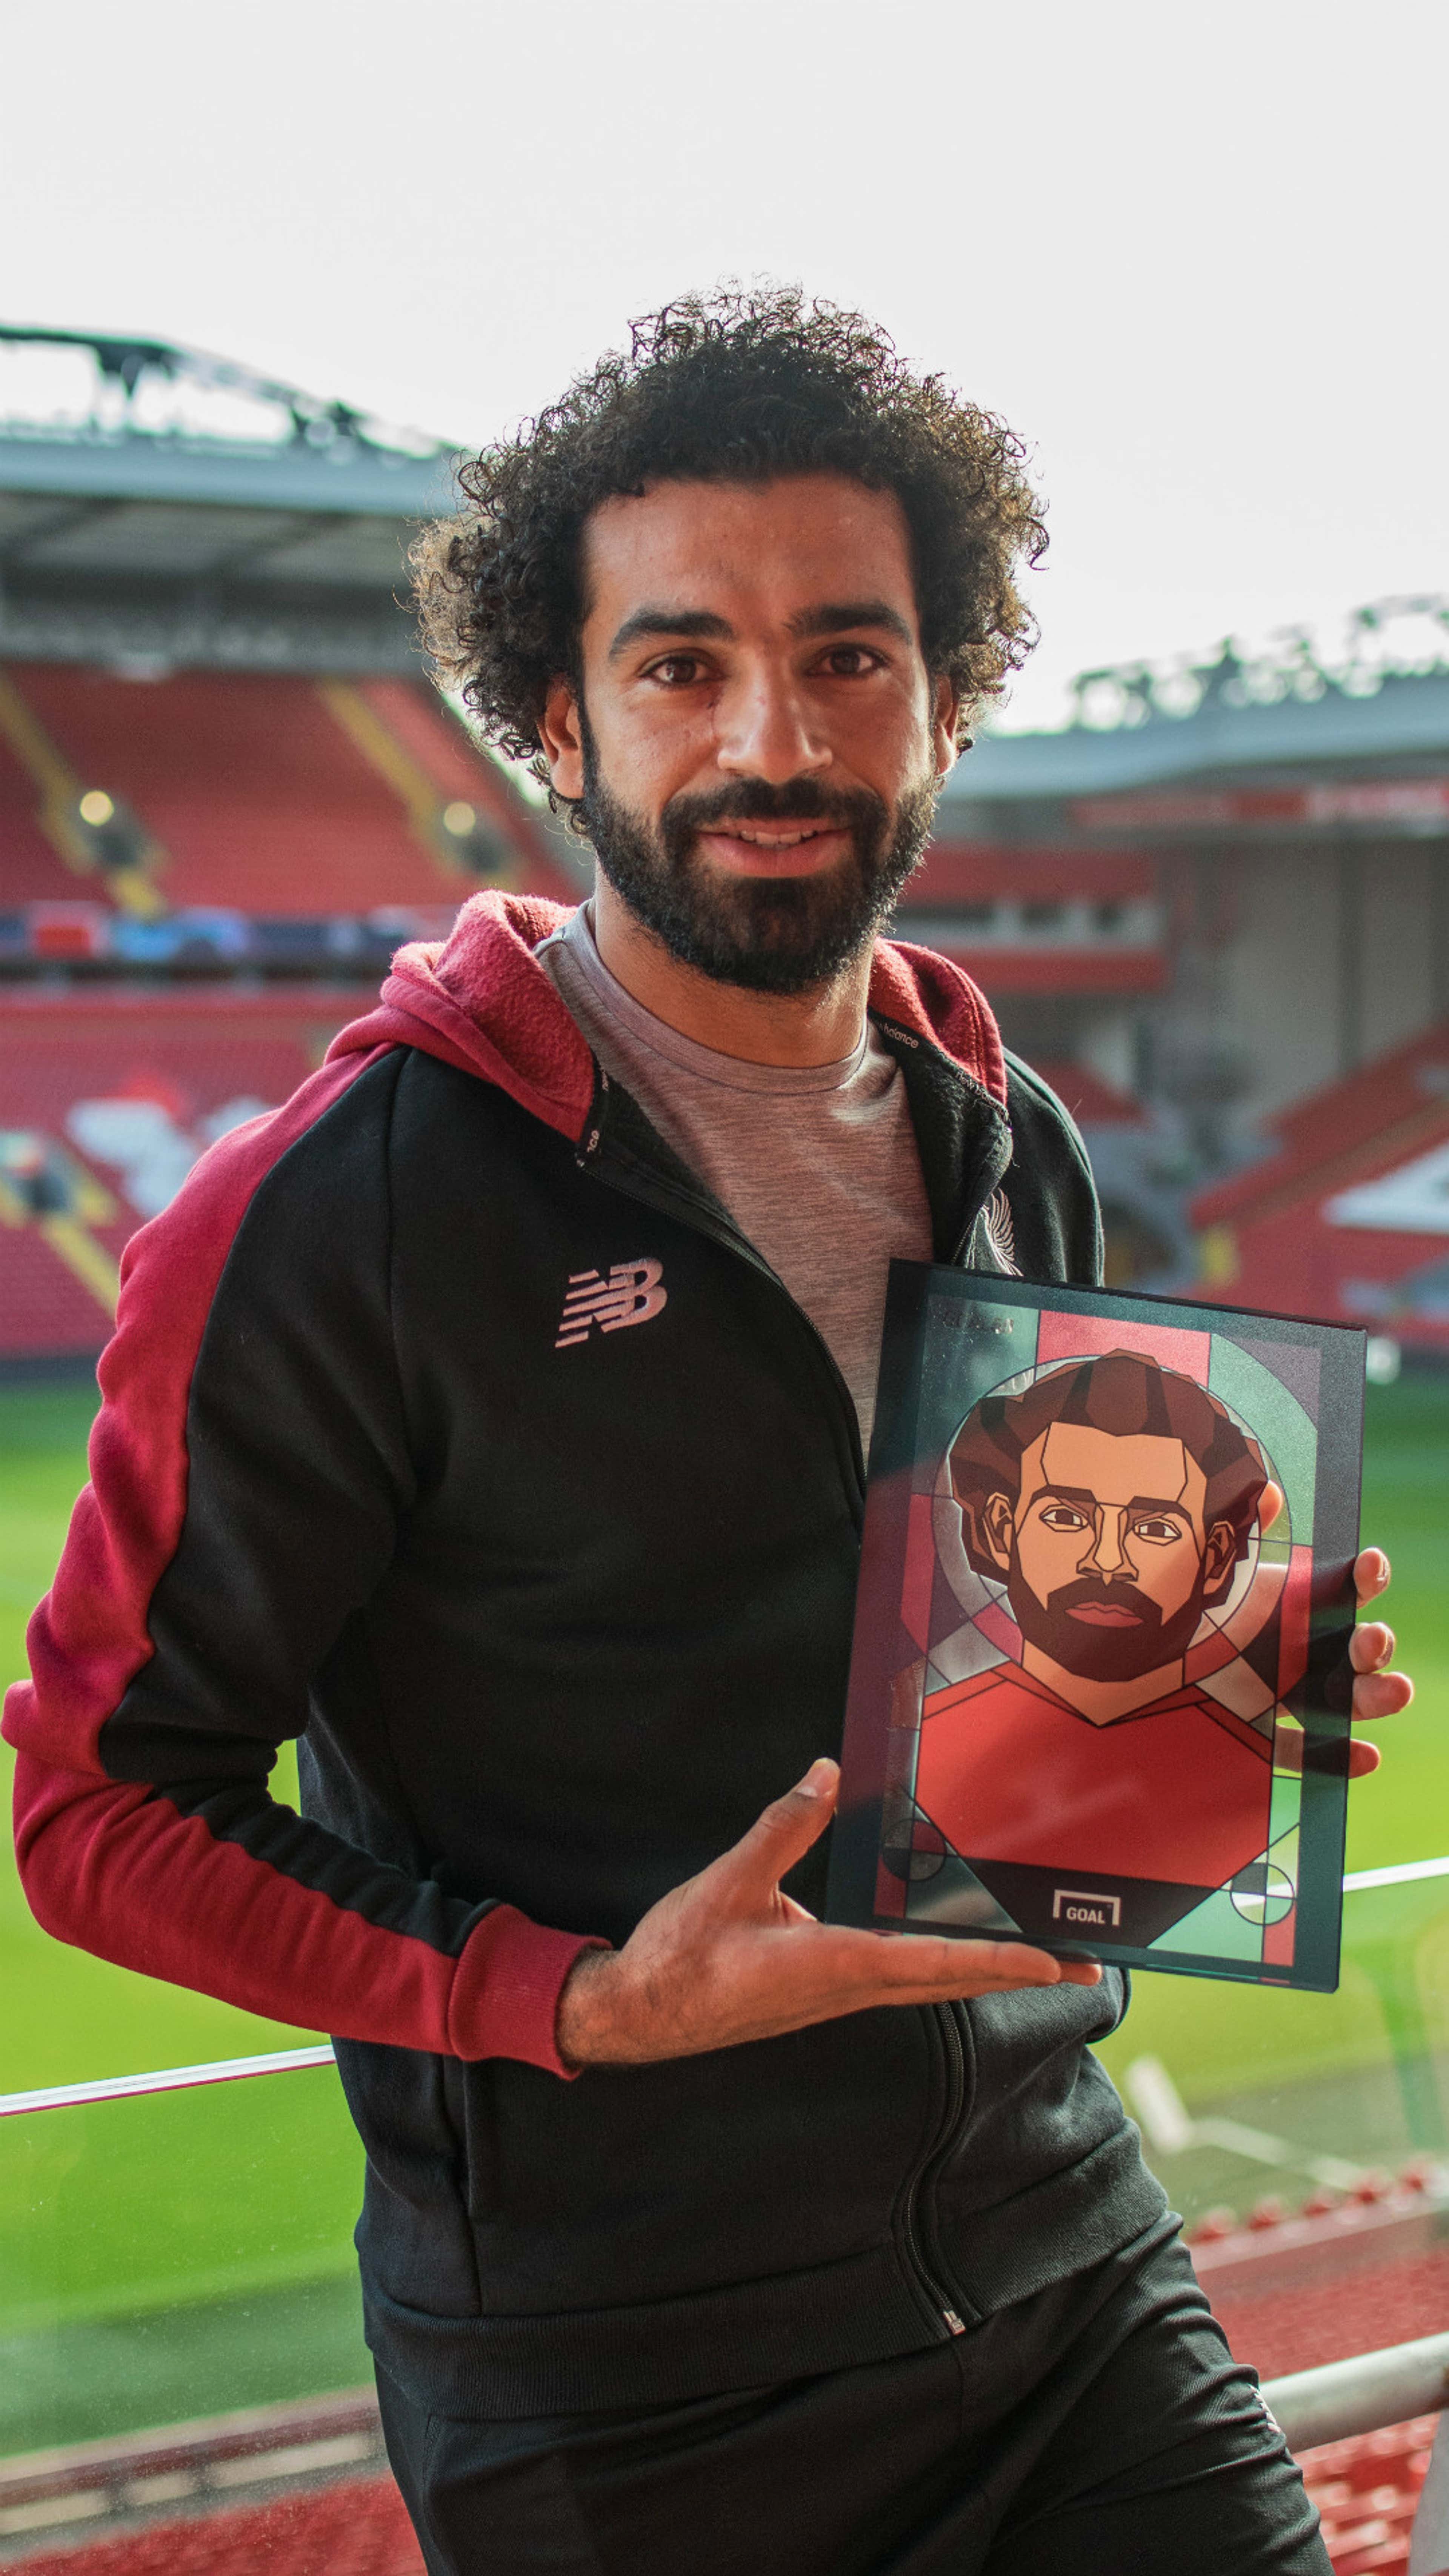 Avassalador, Salah é eleito o melhor jogador da temporada por